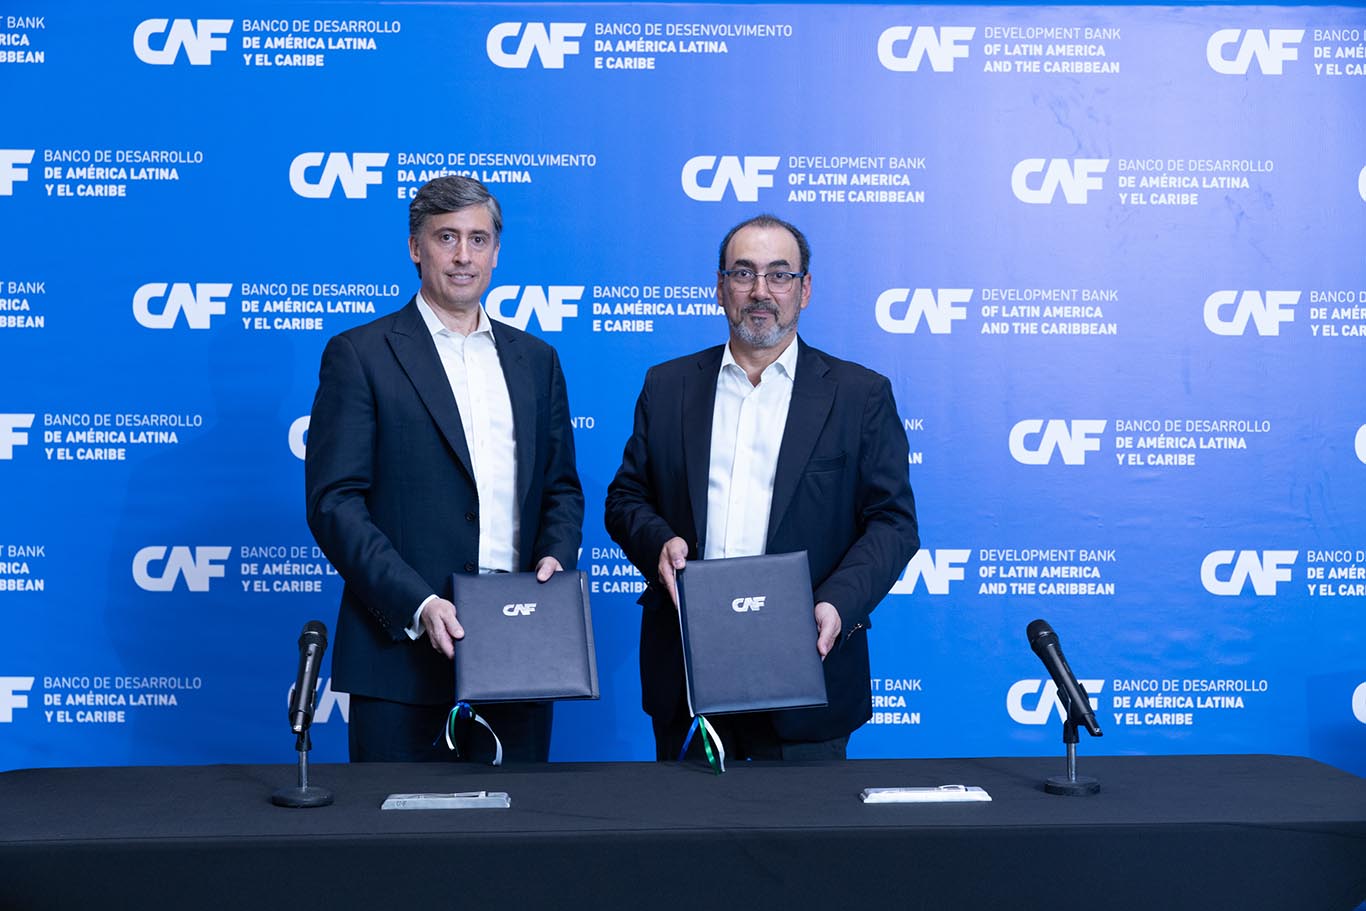 Microsoft y CAF anuncian acuerdo de colaboración